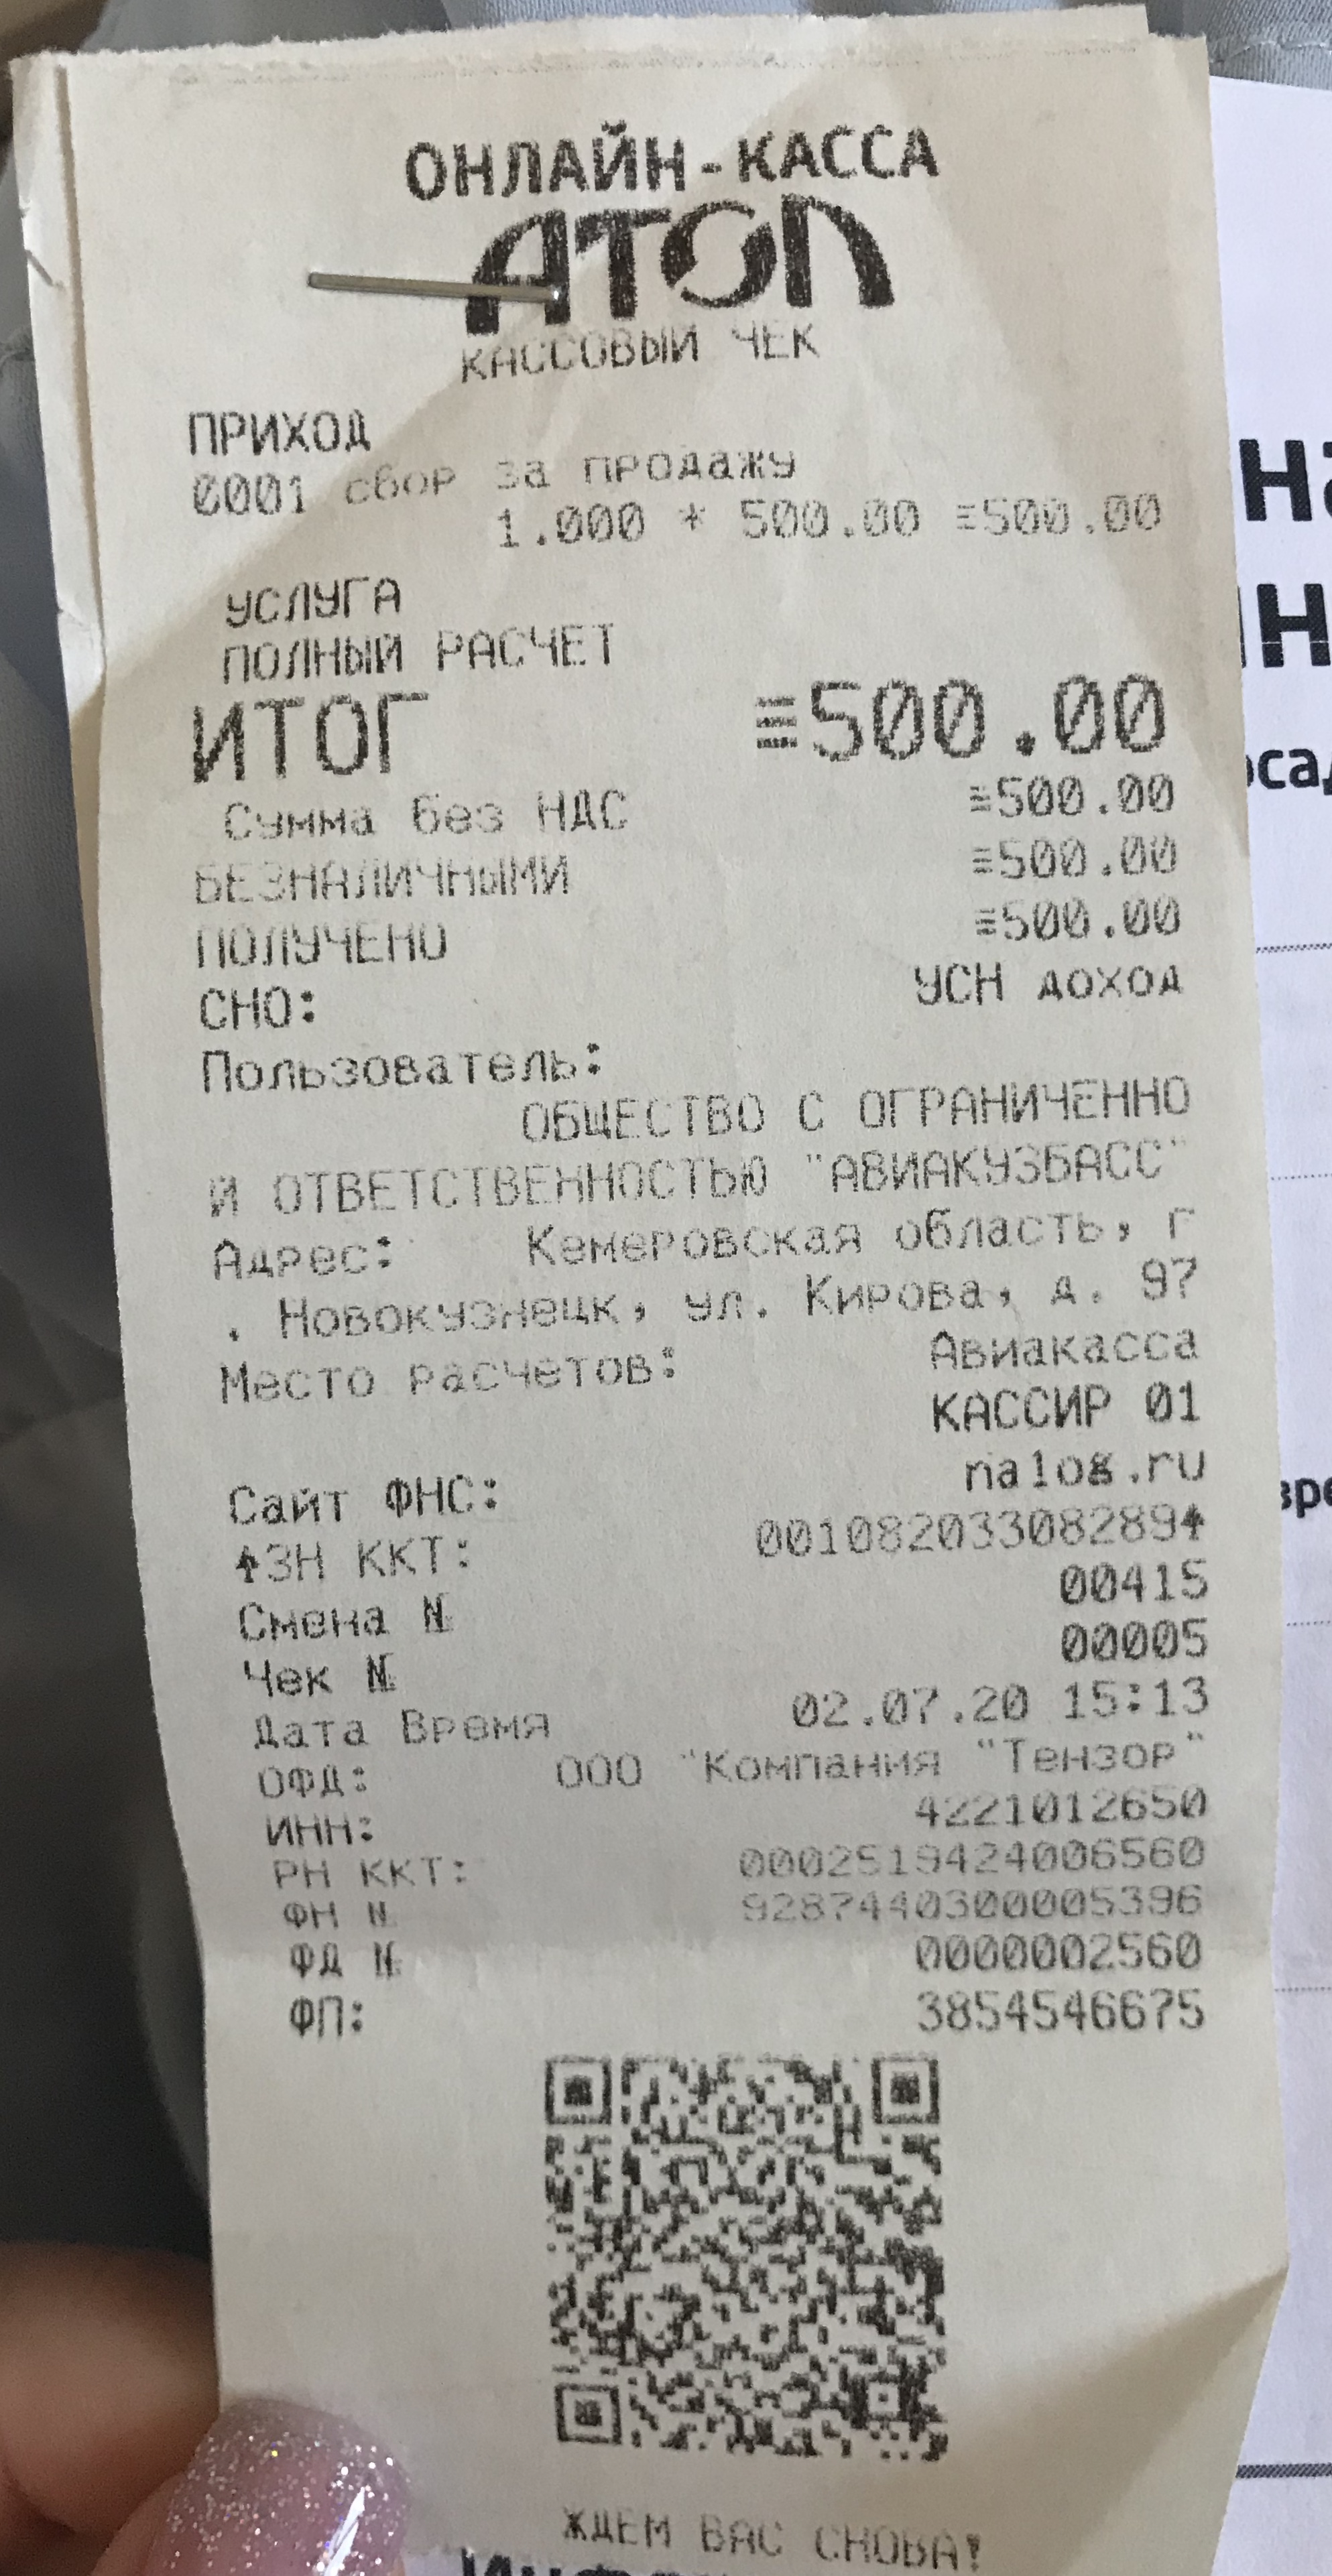 Купить авиабилеты новокузнецк адреса билеты на самолет в минск из калининграда